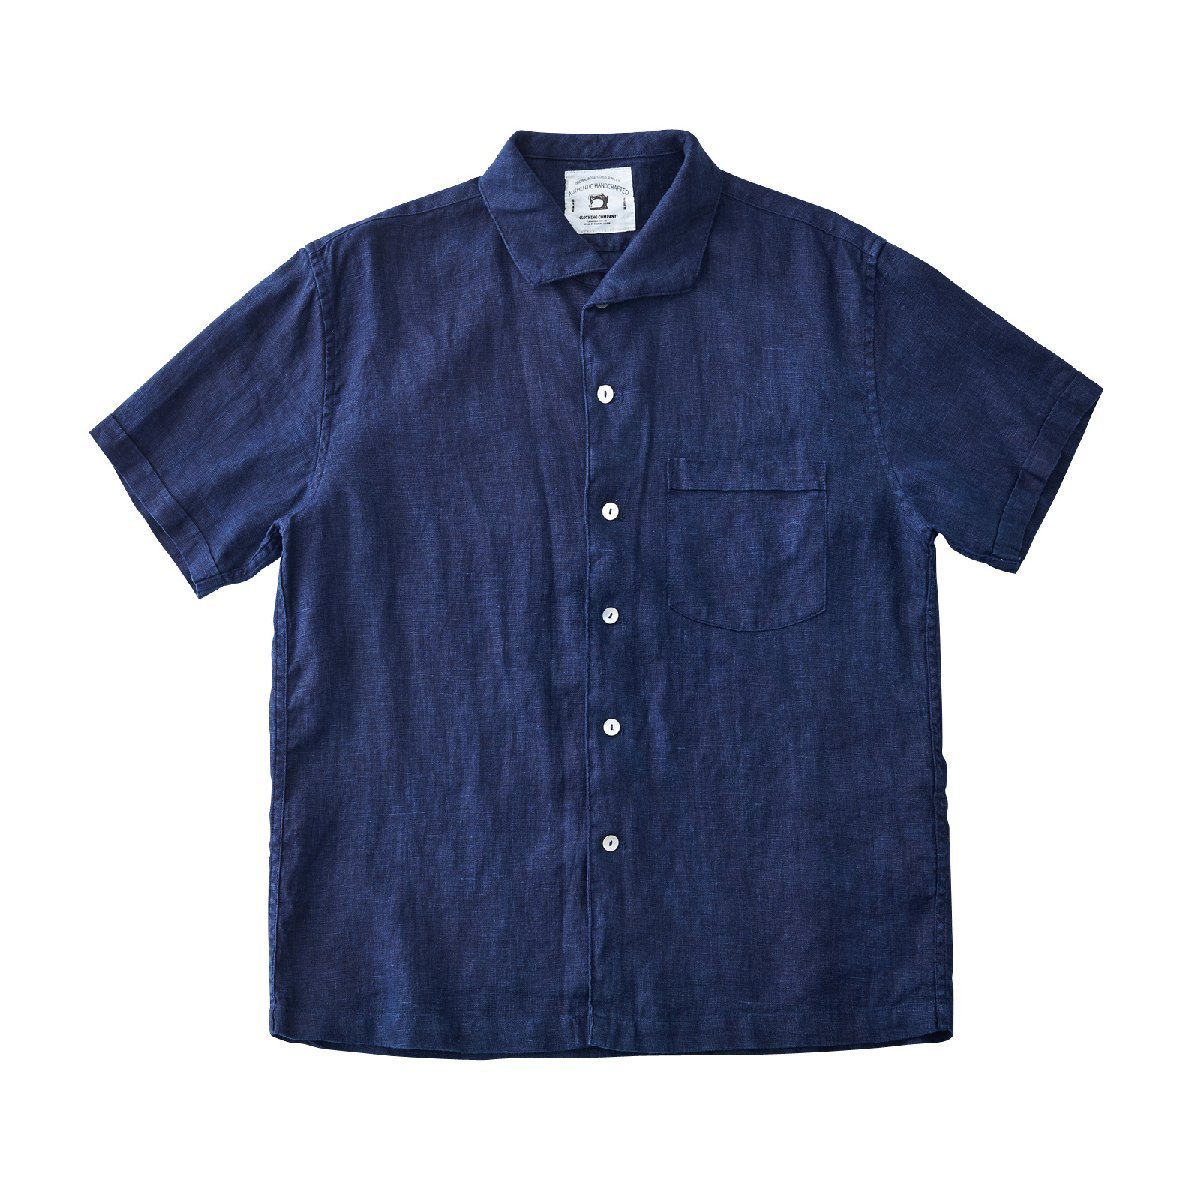 レトロ 藍染め シャツ 半袖 メンズ リネン100% 天然インディゴ 濃紺 1950S ITILIAN COLLAR SHIRT 復刻シャツ S